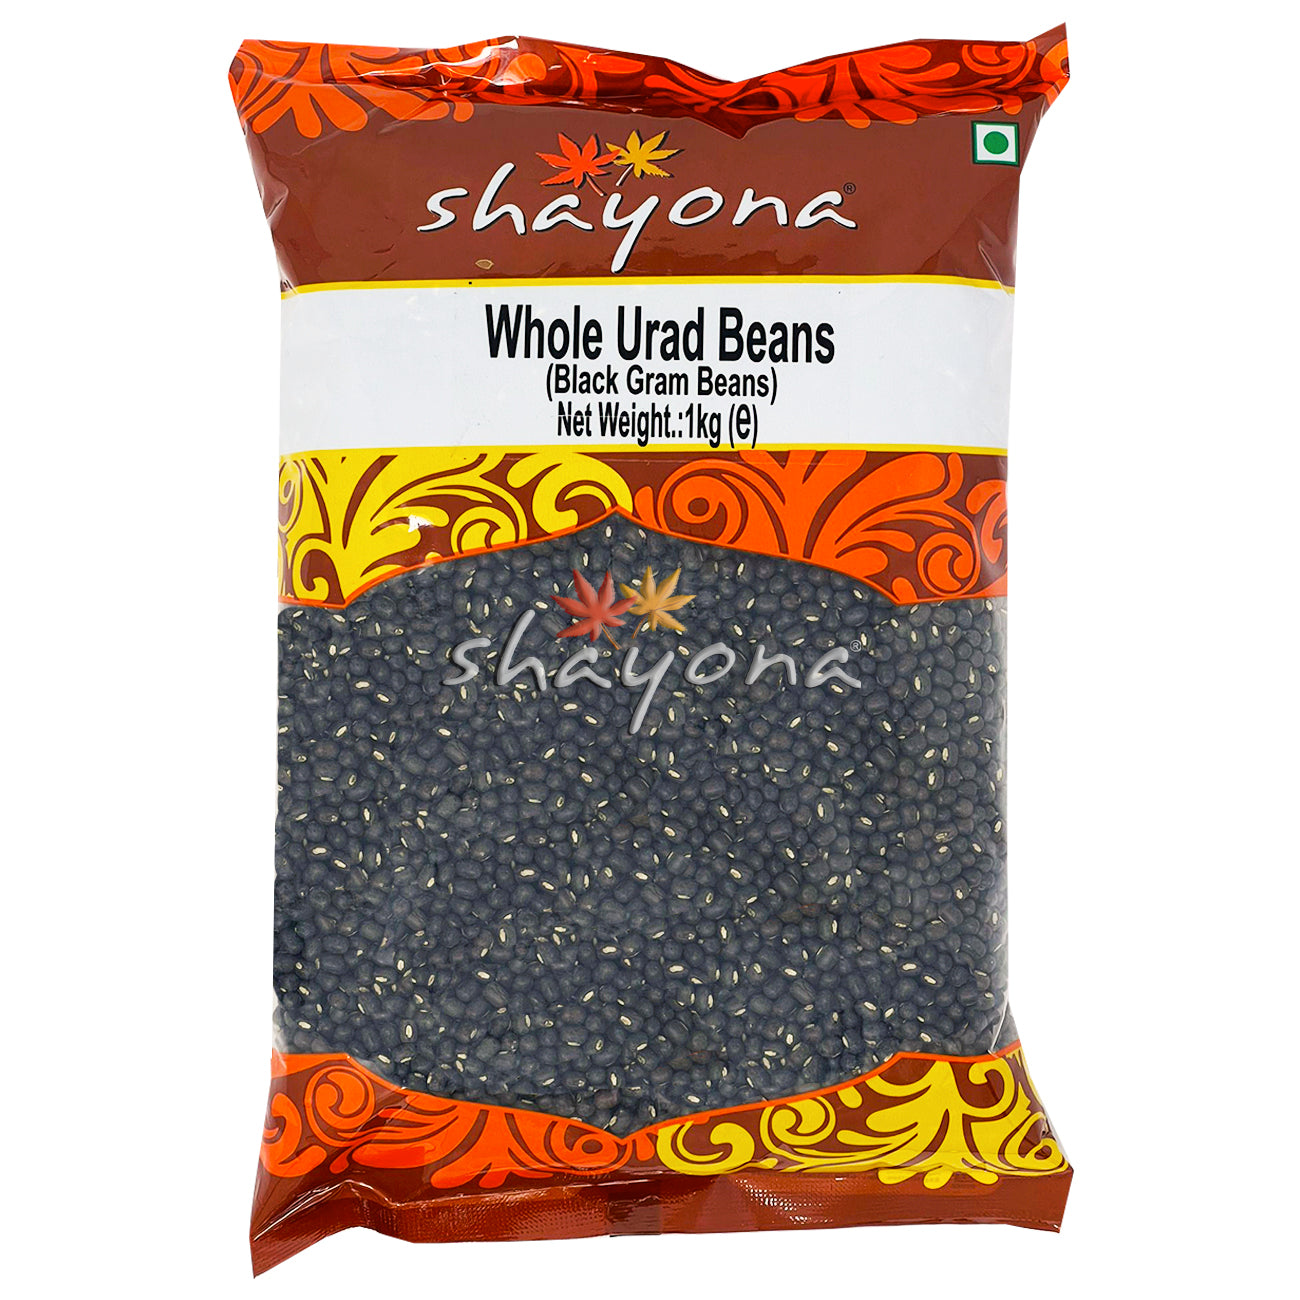 Shayona Whole Urad Beans